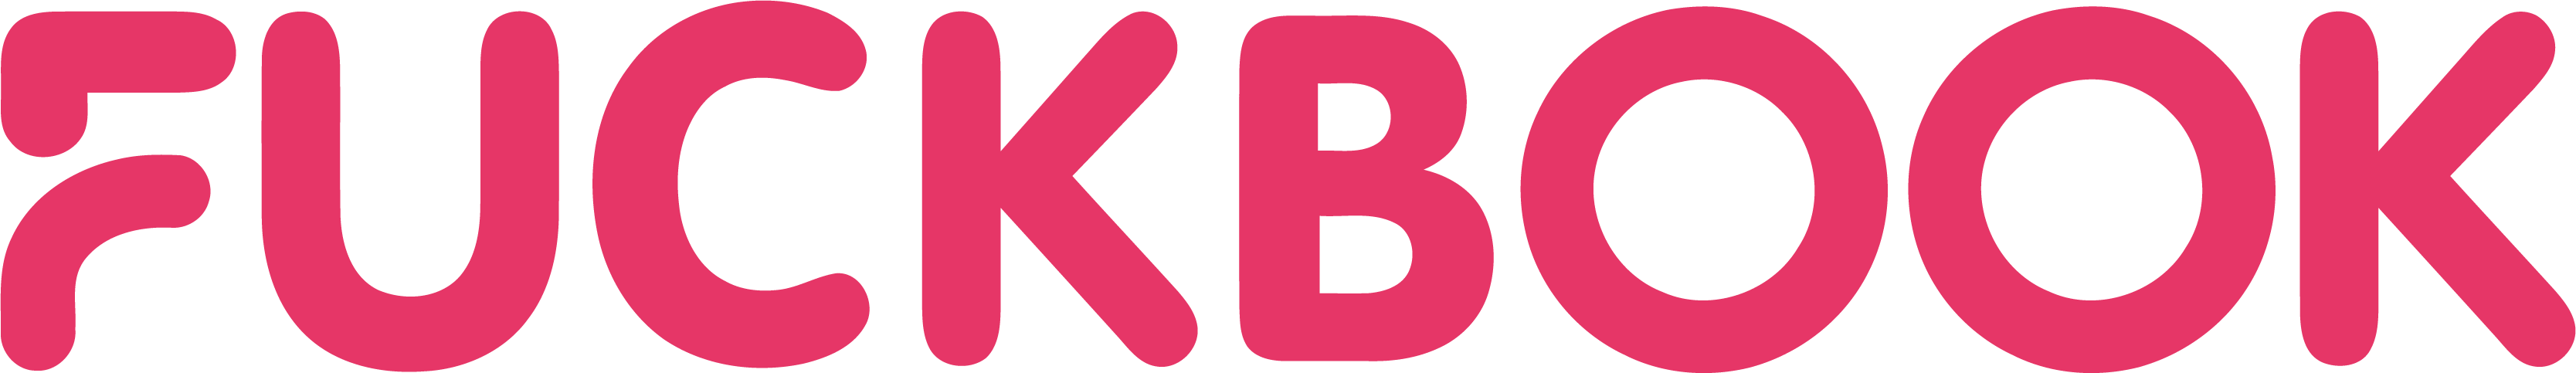 fuckbook.com logo